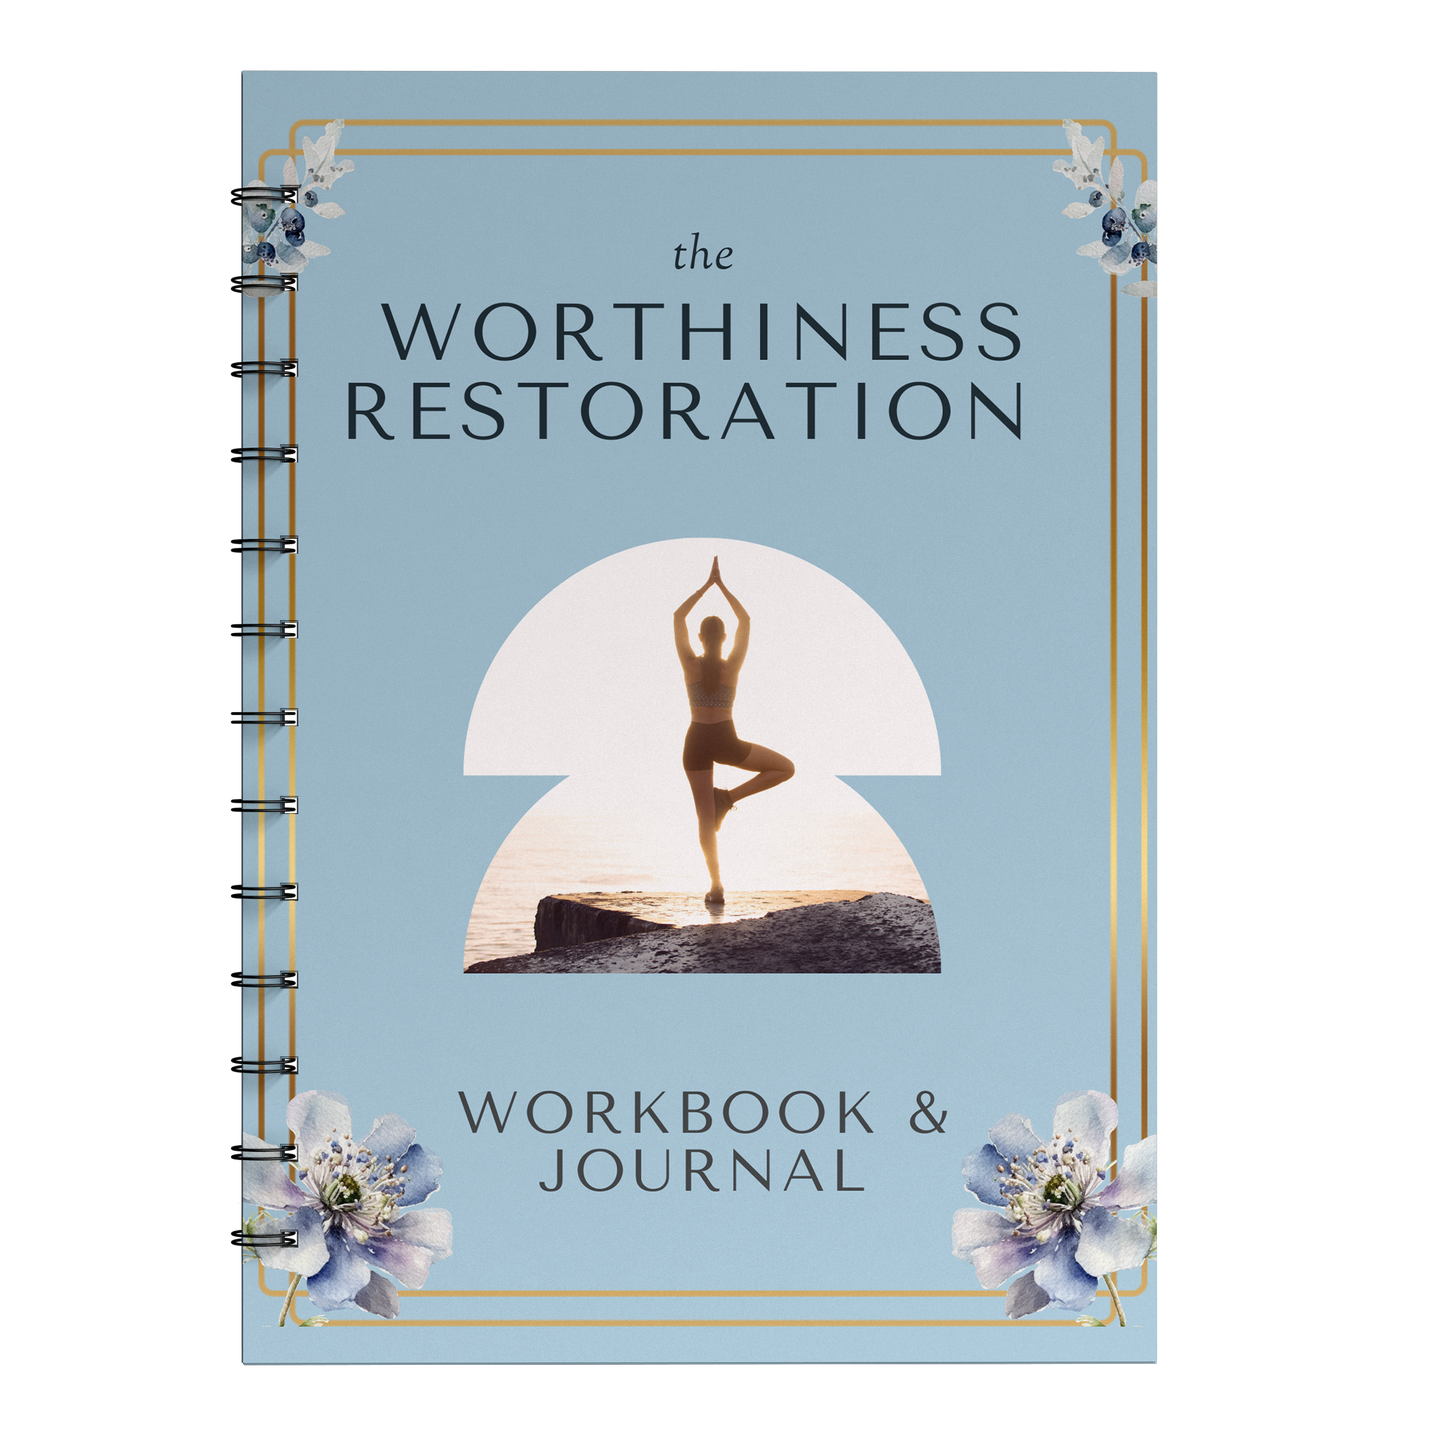 The Worthiness Restoration: Workbook & Journal